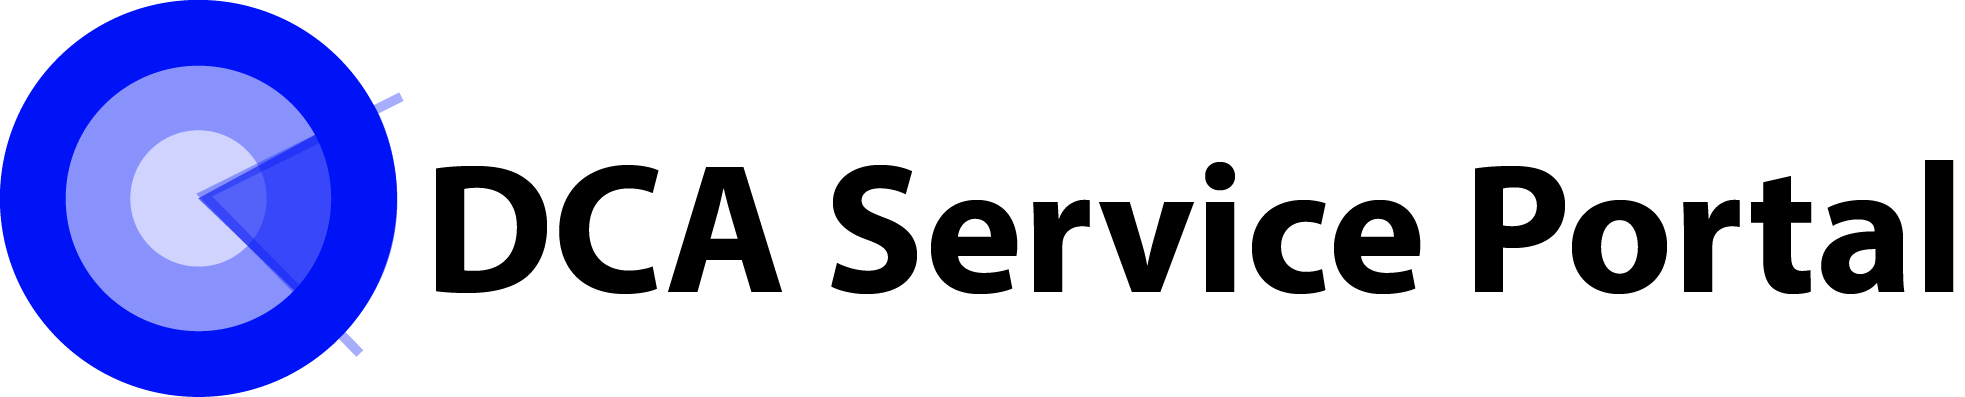 DCA Service Portal